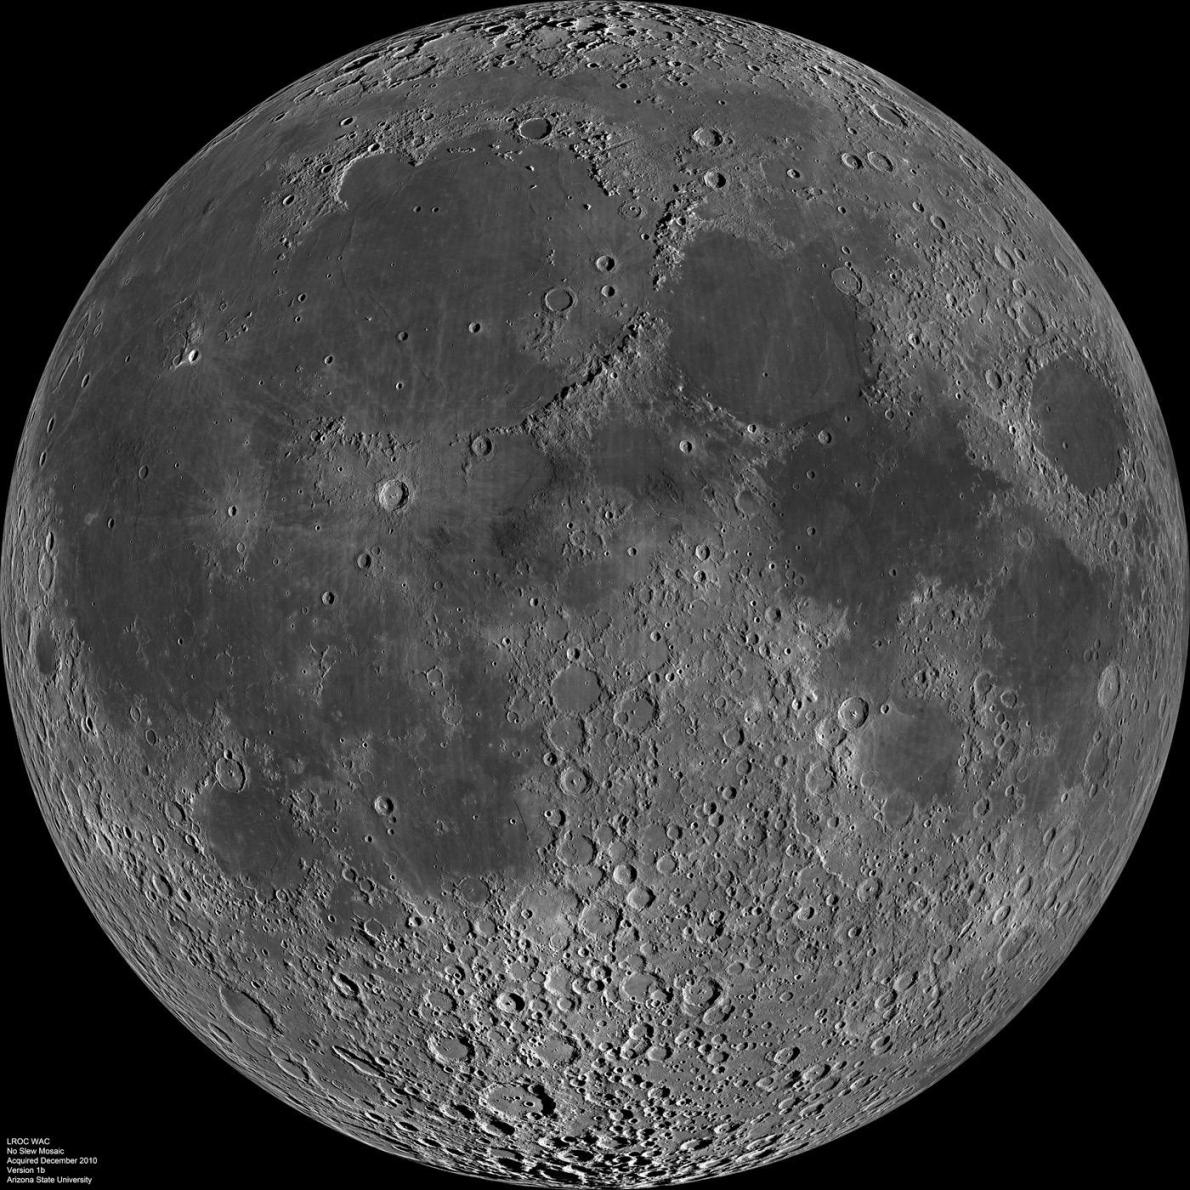 這張由美國航太總署影像所建立的地震震動圖，顯示了與月球表面曼德爾施塔姆懸崖（Mandel’shtam scarp）相關的逆衝斷層上的淺層月震所產生的預期運動PHOTOGRAPH BY UNIVERSITY OF MARYLAND/SMITHSONIAN